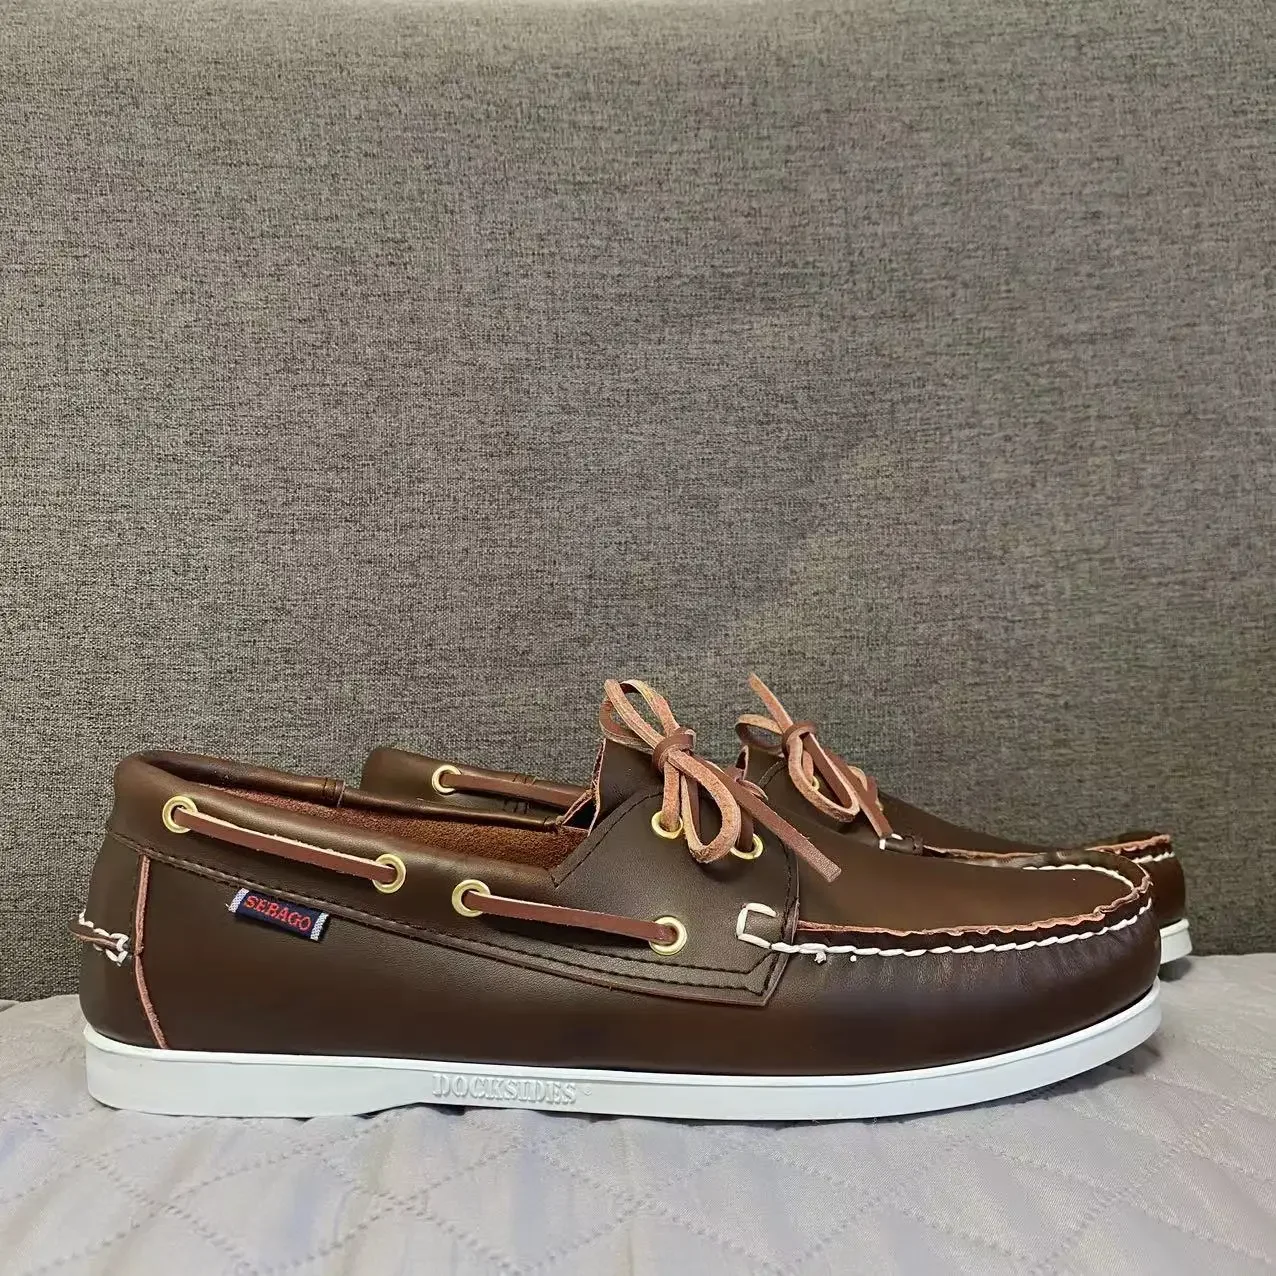 

Sebago Men Homme Authentic Docksides Shoes - Premium Leather Moc Toe Lace Up Boat Shoes 122A